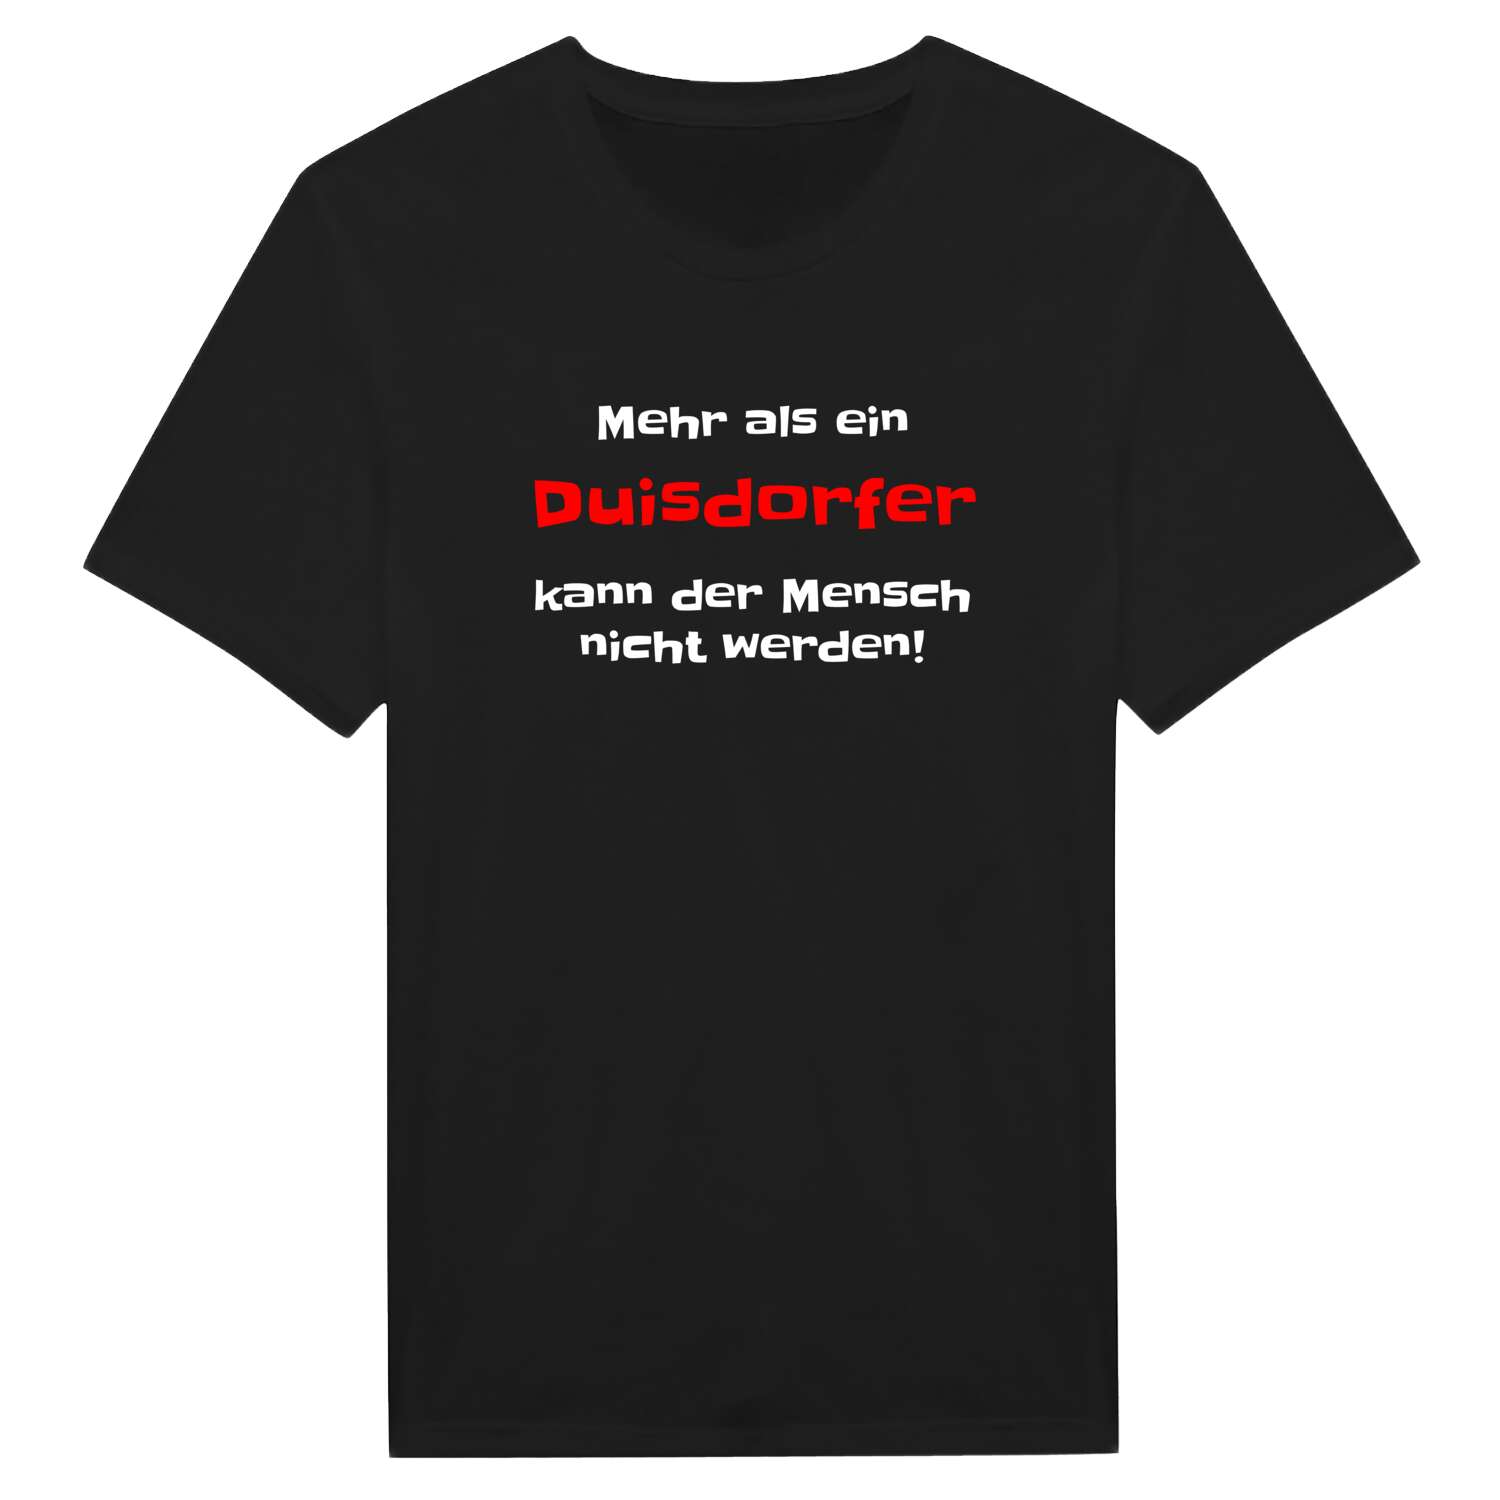 Duisdorf T-Shirt »Mehr als ein«